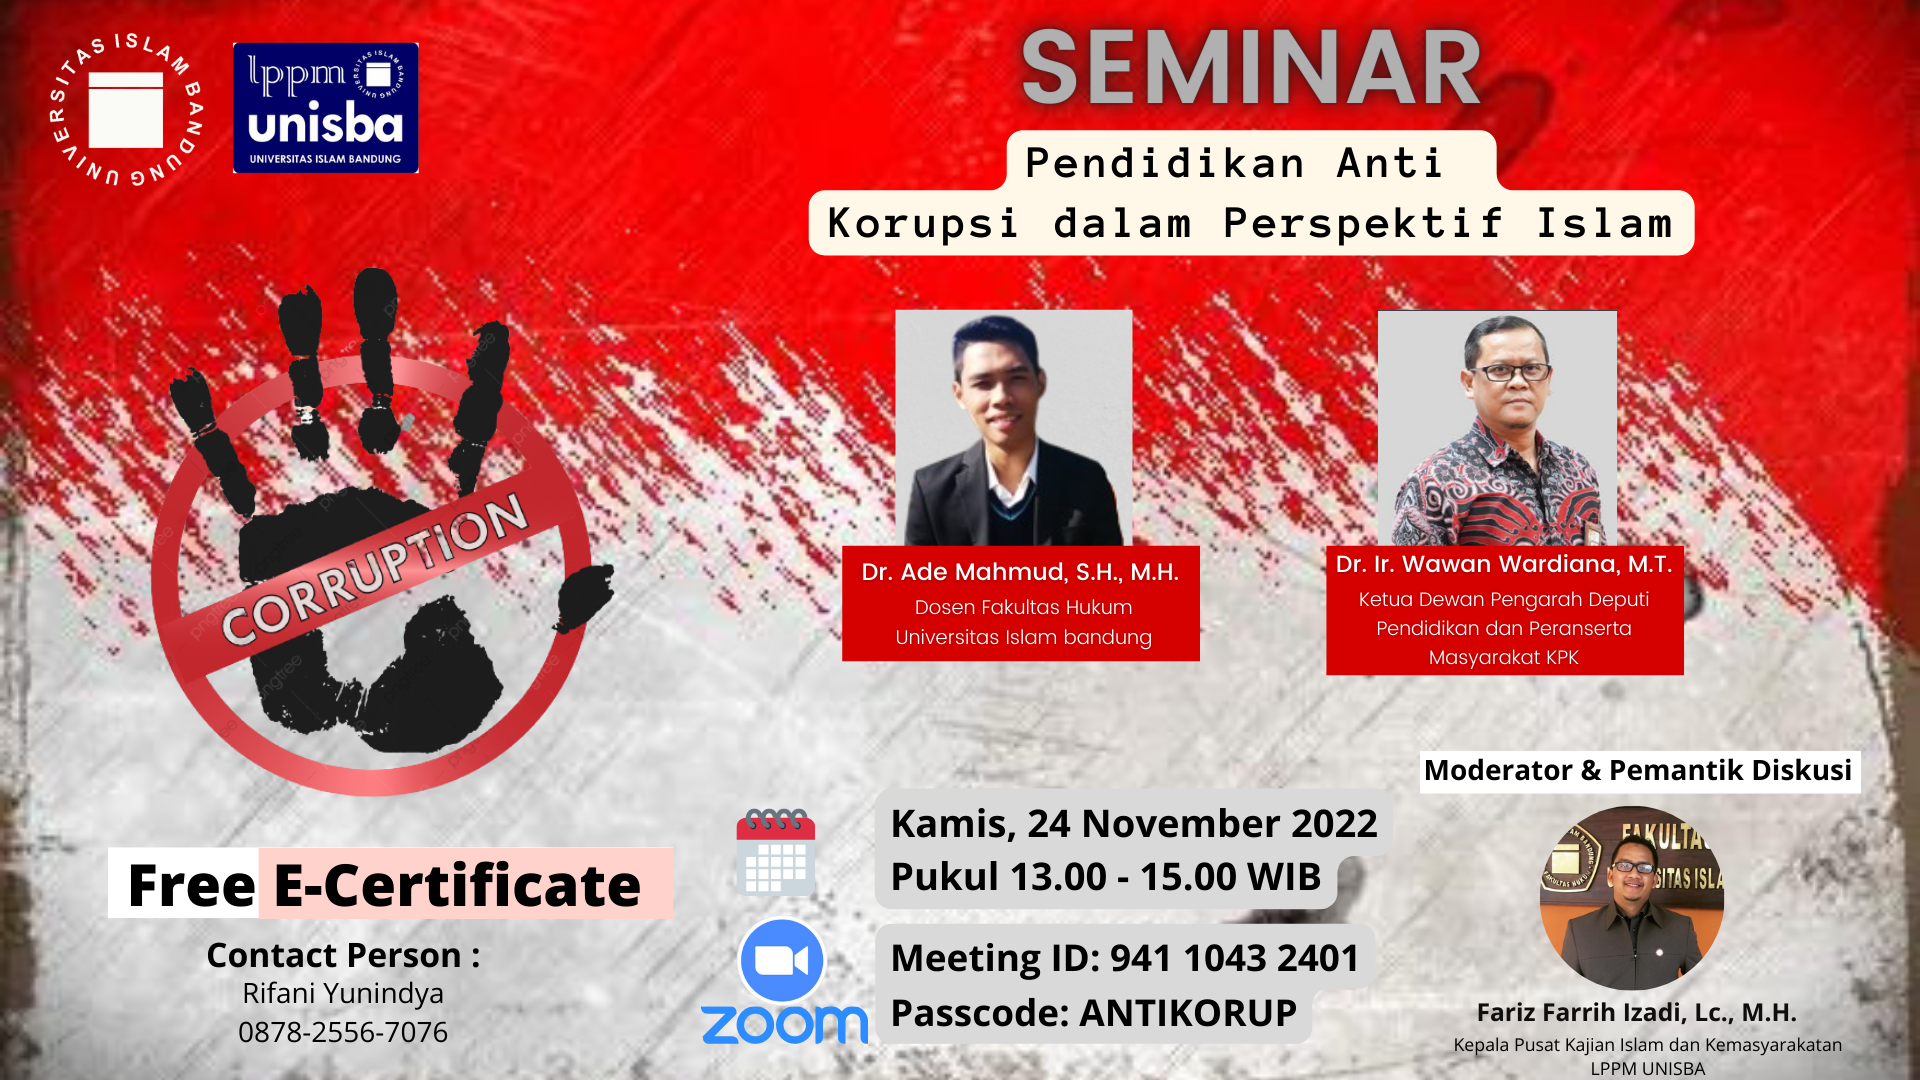 Seminar Pendidikan Anti Korupsi dalam Perspektif Islam